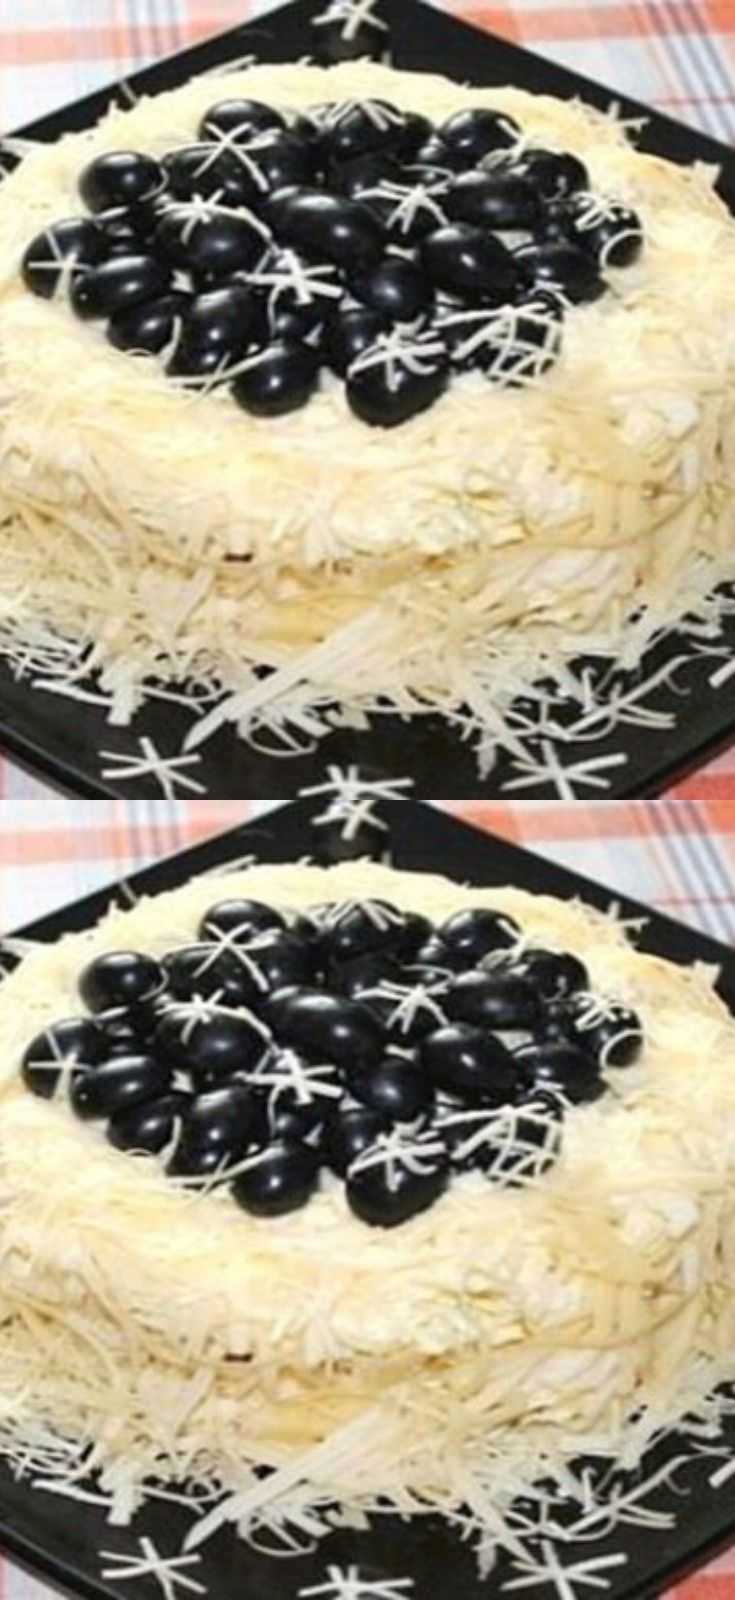 Салат "черный жемчуг" с черносливом - 9 пошаговых фото в рецепте